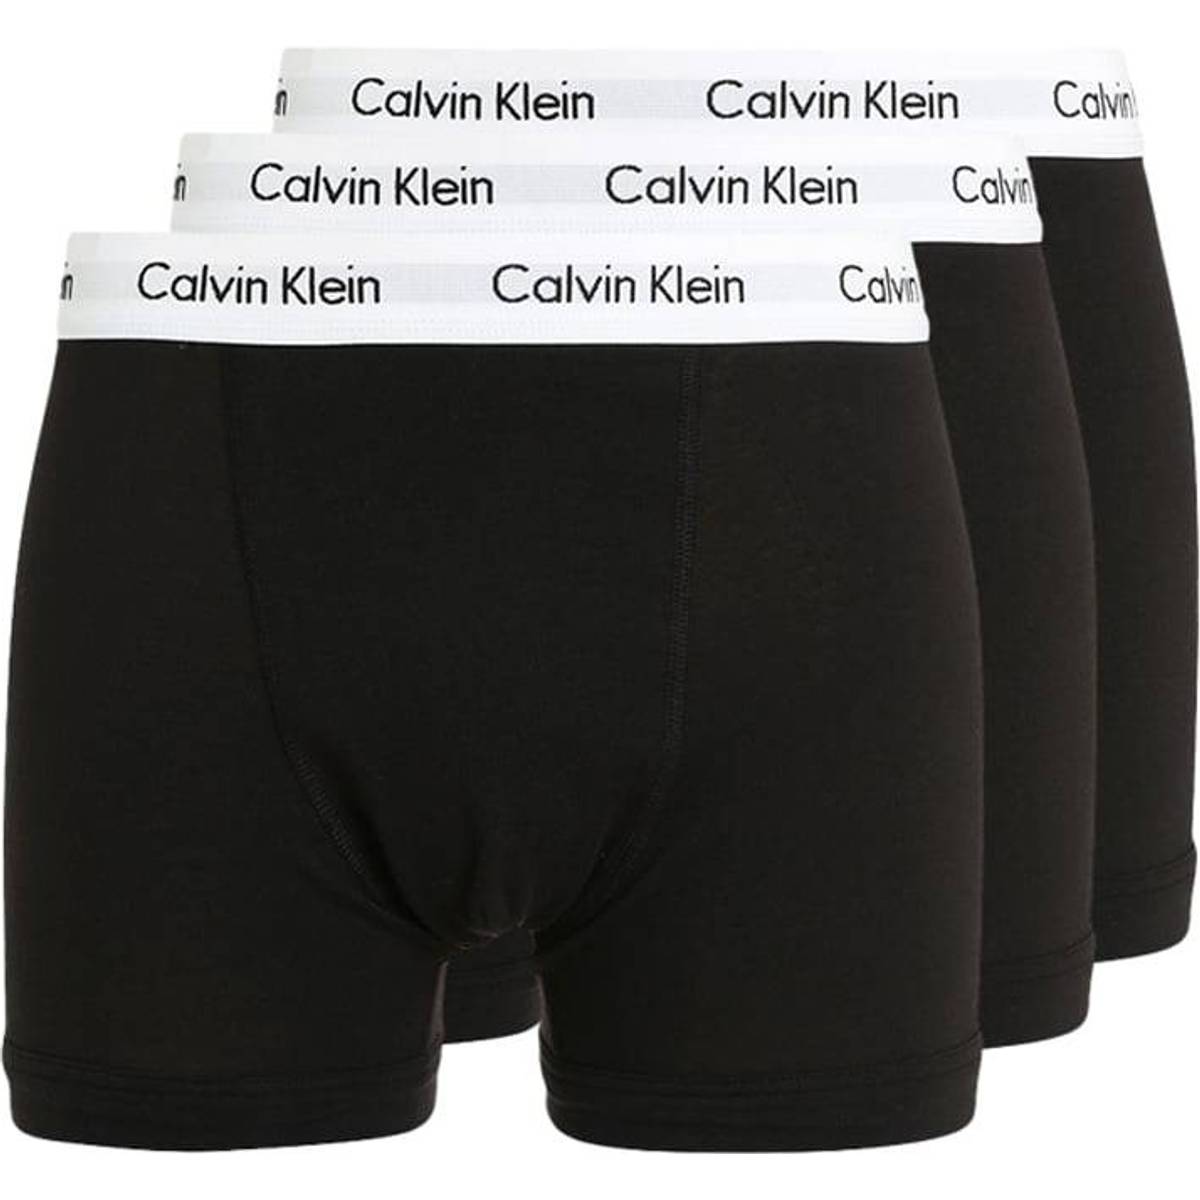 Calvin Klein Boxer (1000+ produkter) hos PriceRunner • Se lägsta ...